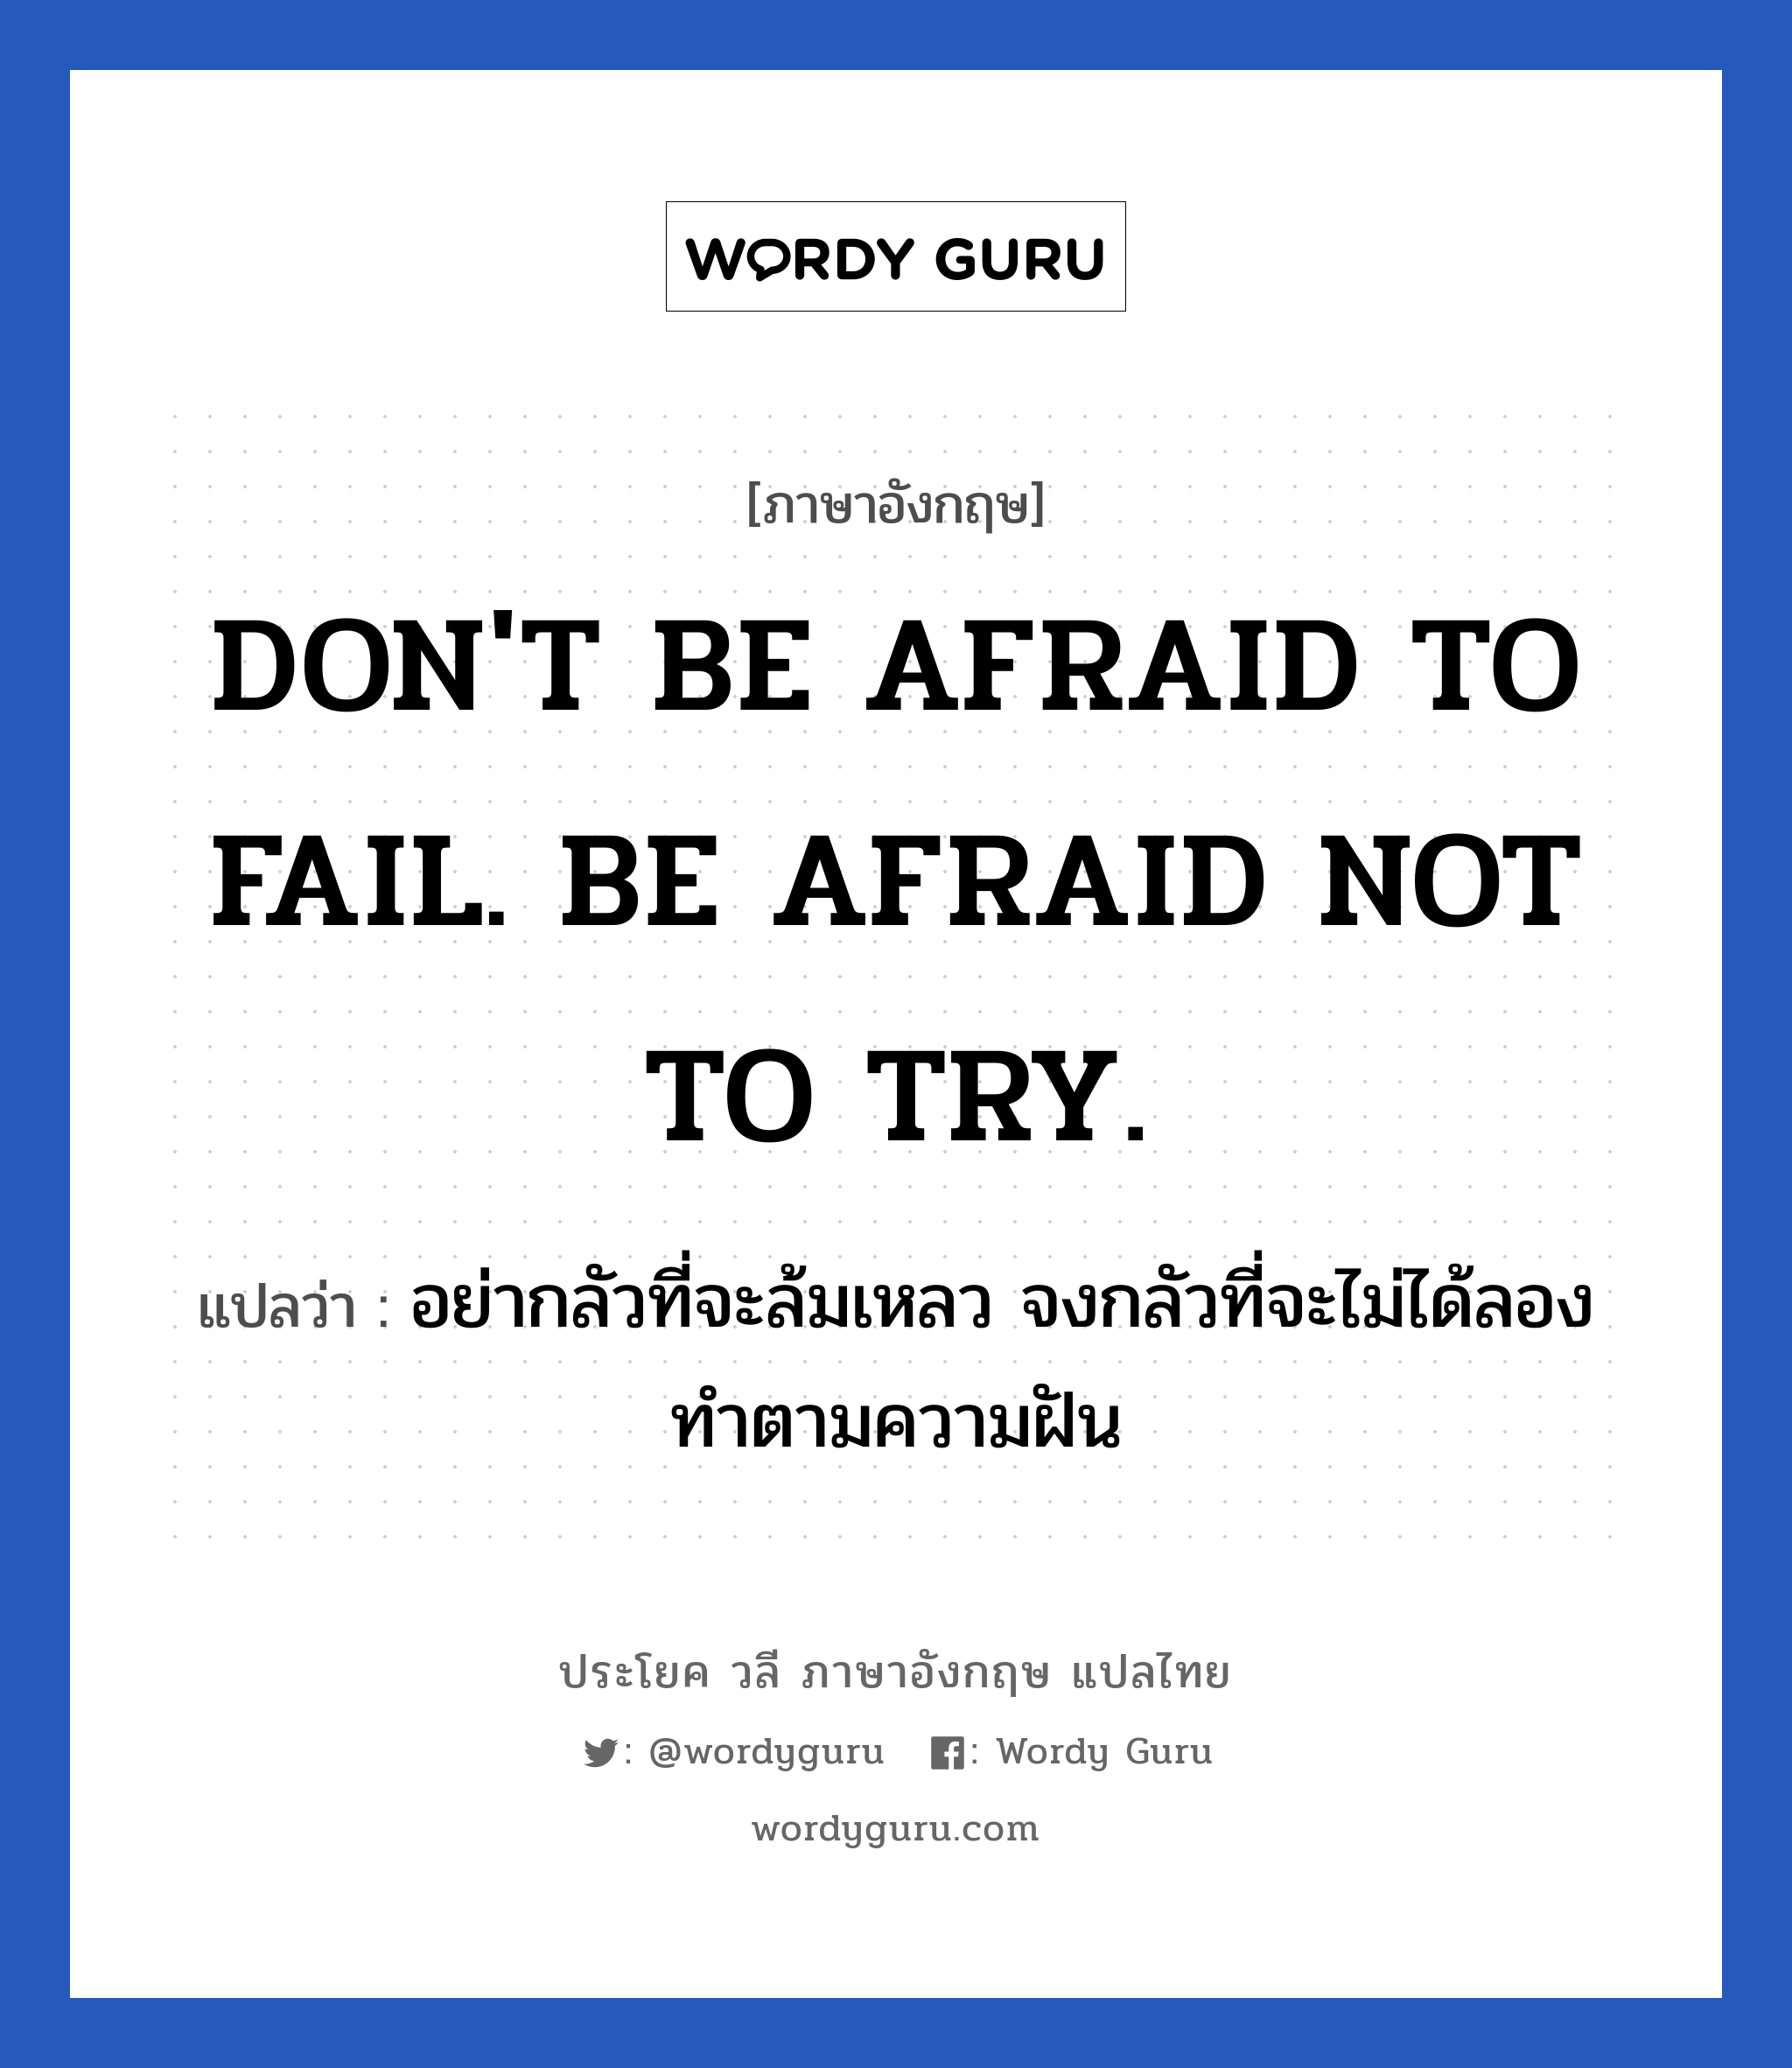 DON'T BE AFRAID TO FAIL. BE AFRAID NOT TO TRY. แปลว่า? เป็นประโยคในกลุ่มประเภท ในที่ทำงาน, วลีภาษาอังกฤษ DON'T BE AFRAID TO FAIL. BE AFRAID NOT TO TRY. แปลว่า อย่ากลัวที่จะล้มเหลว จงกลัวที่จะไม่ได้ลองทำตามความฝัน หมวด ในที่ทำงาน